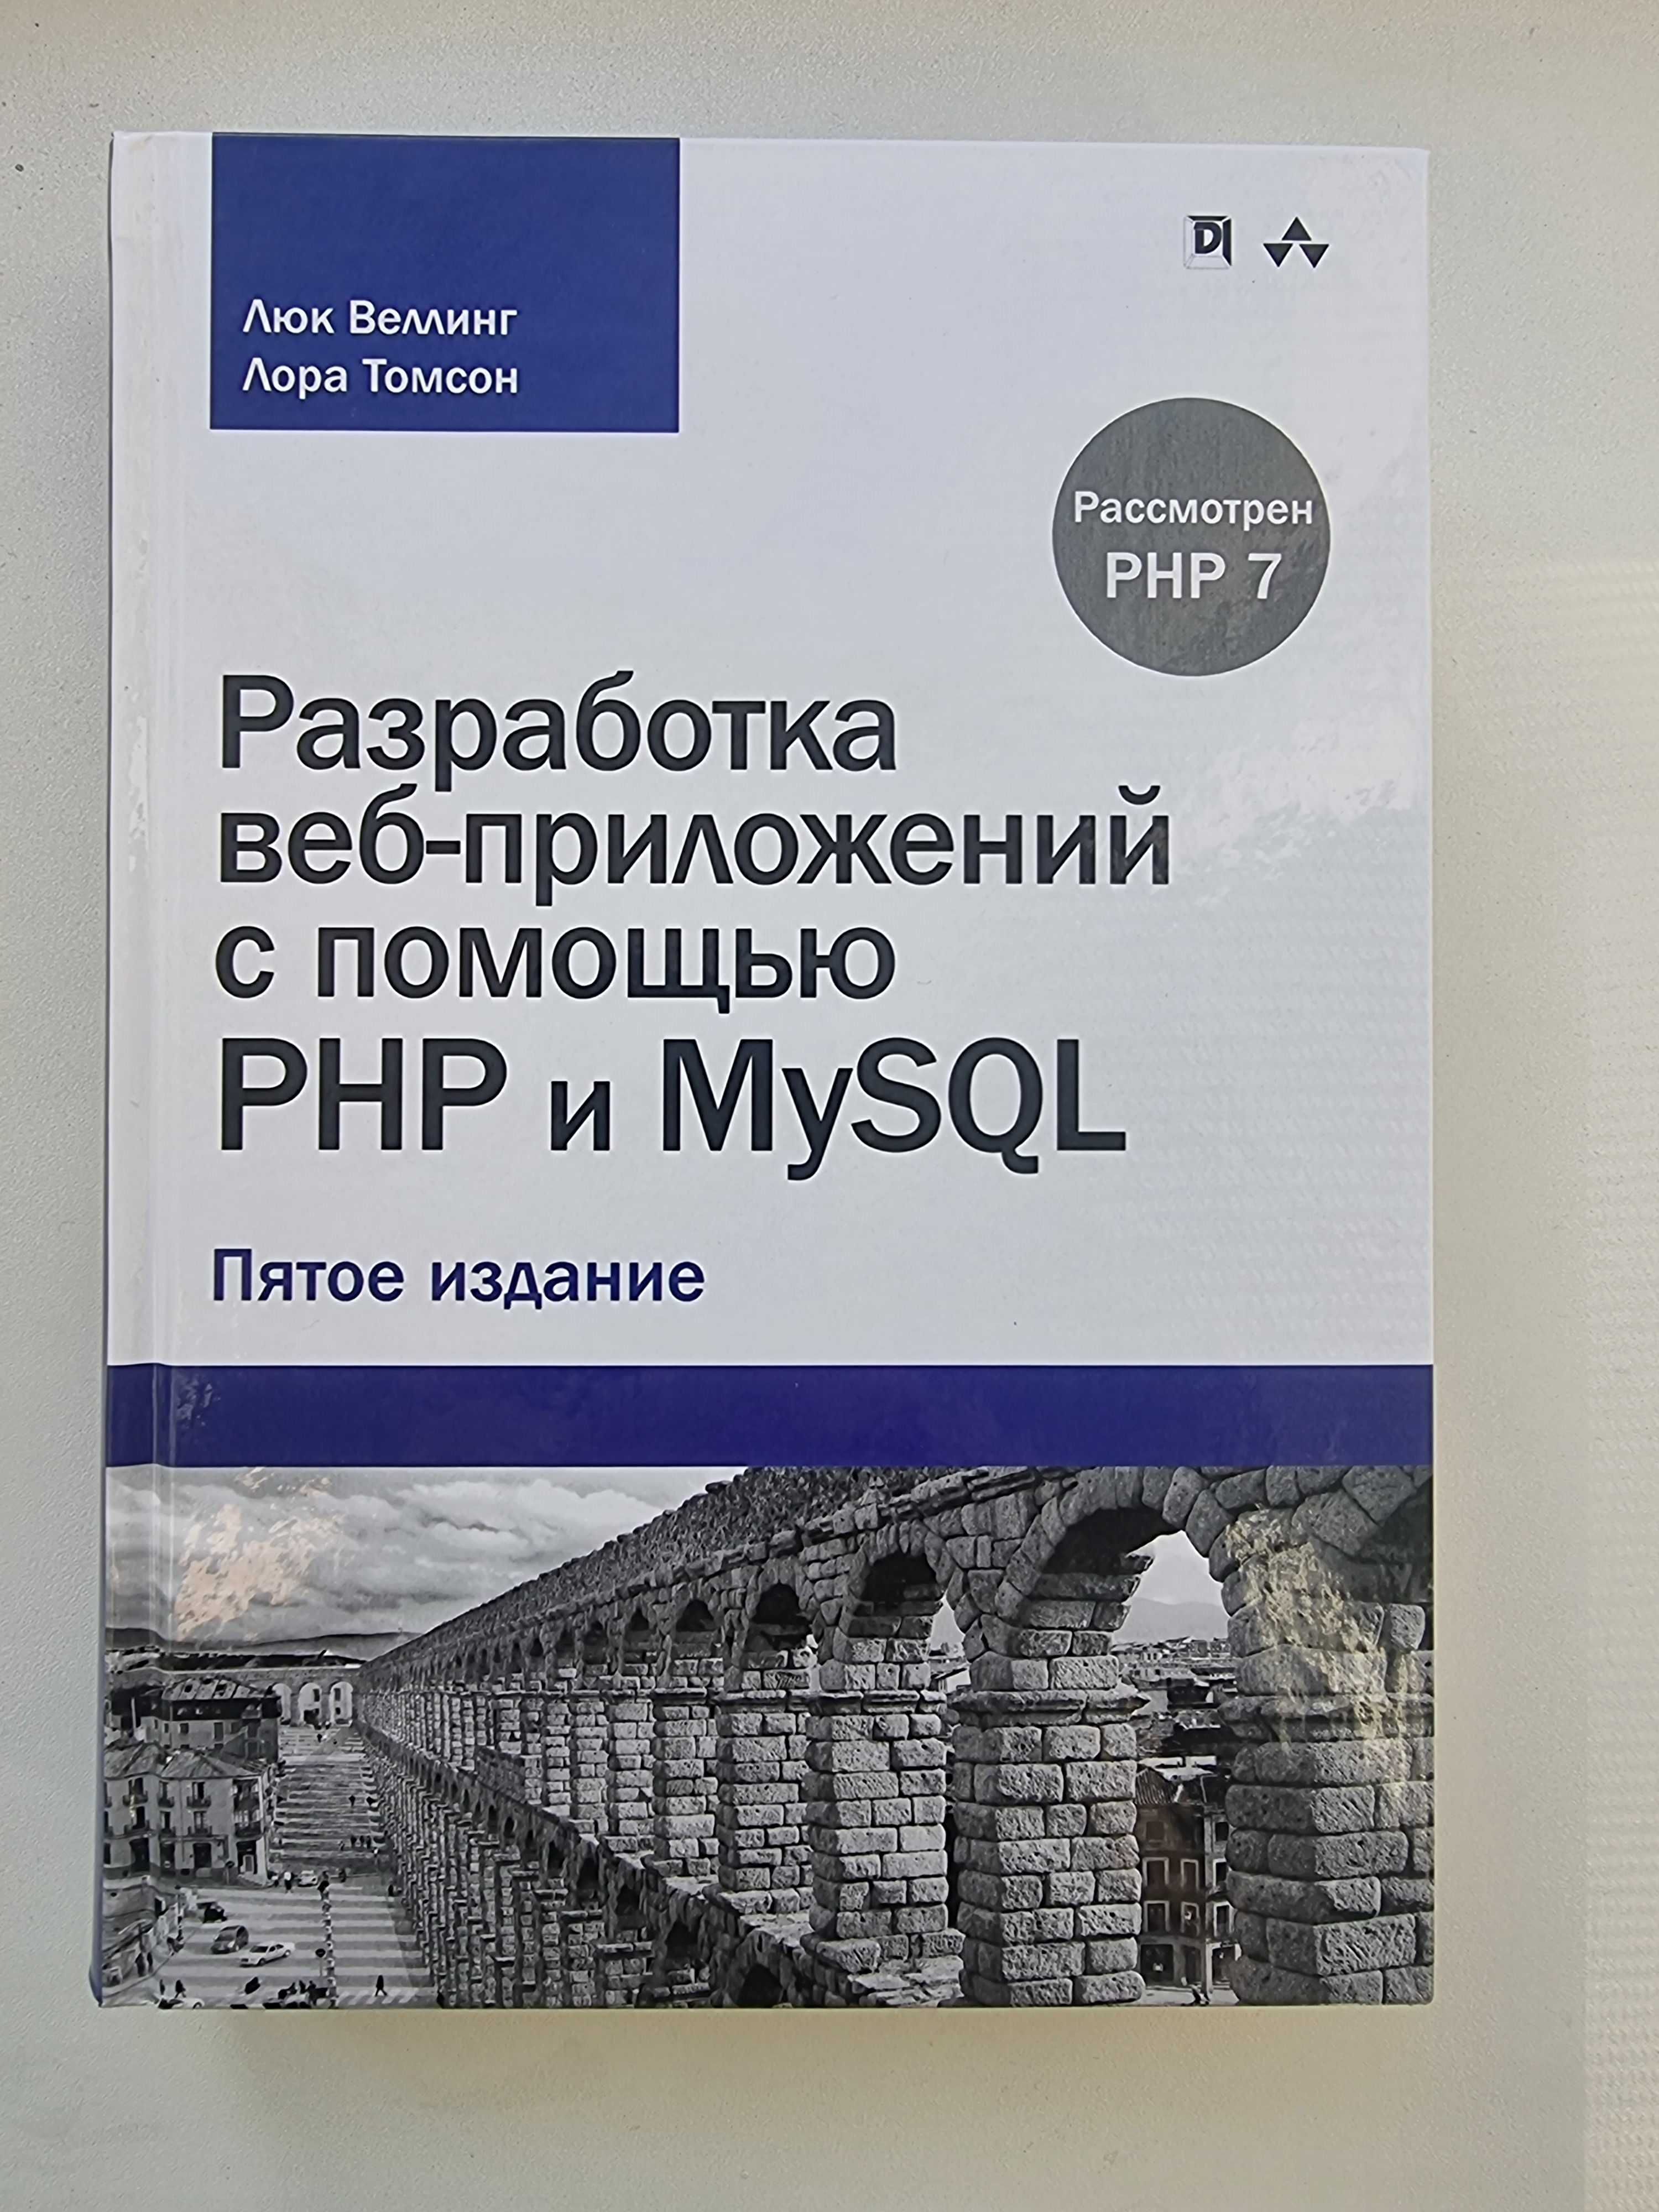 Разработка веб-приложений с помощью PHP и MySQL (5-е издание). Люк Вел